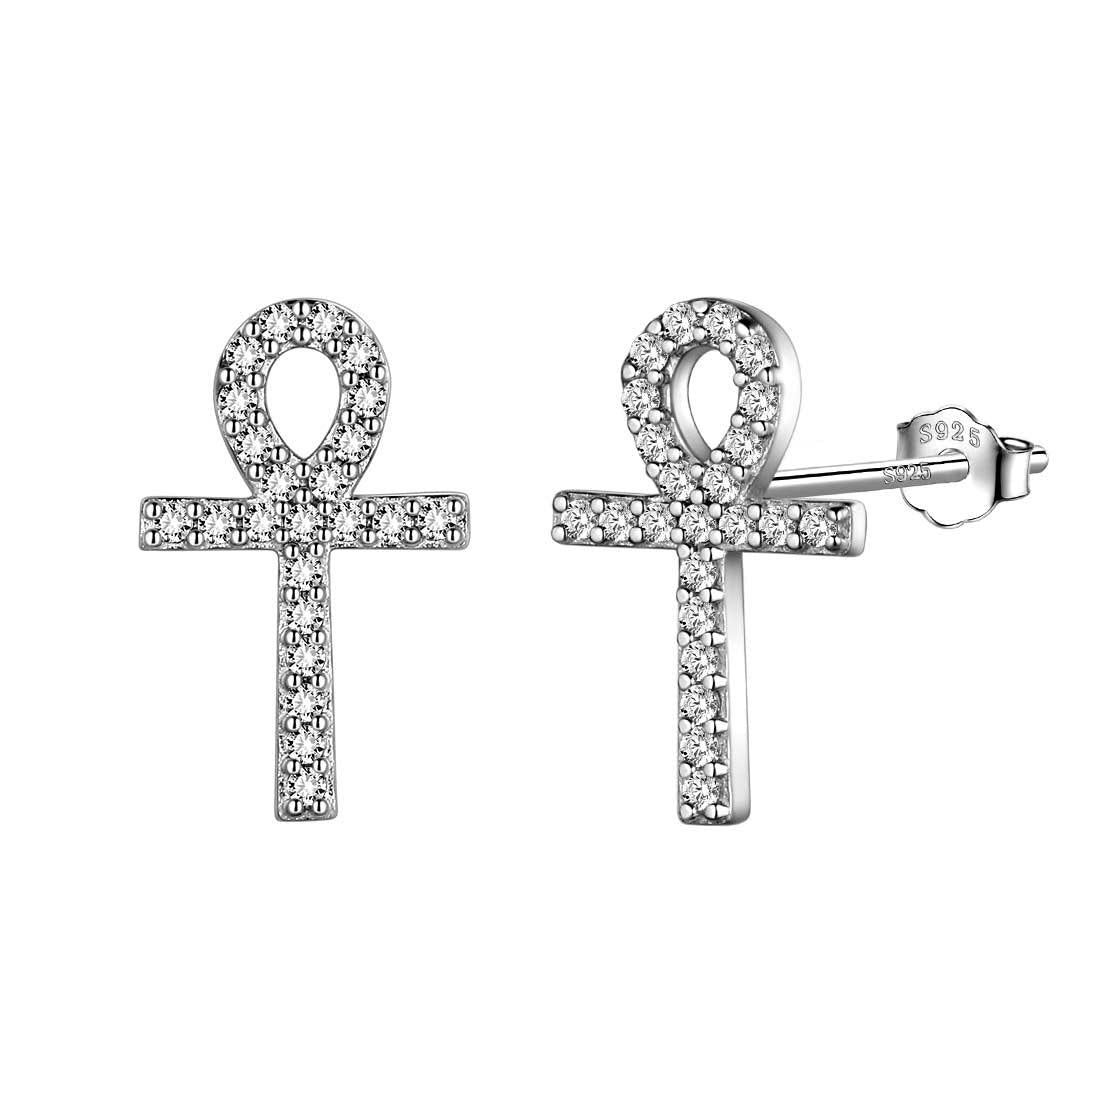 Small Ankh Cross Stud Earrings Sterling Silver - Earrings - Aurora Tears Jewelry